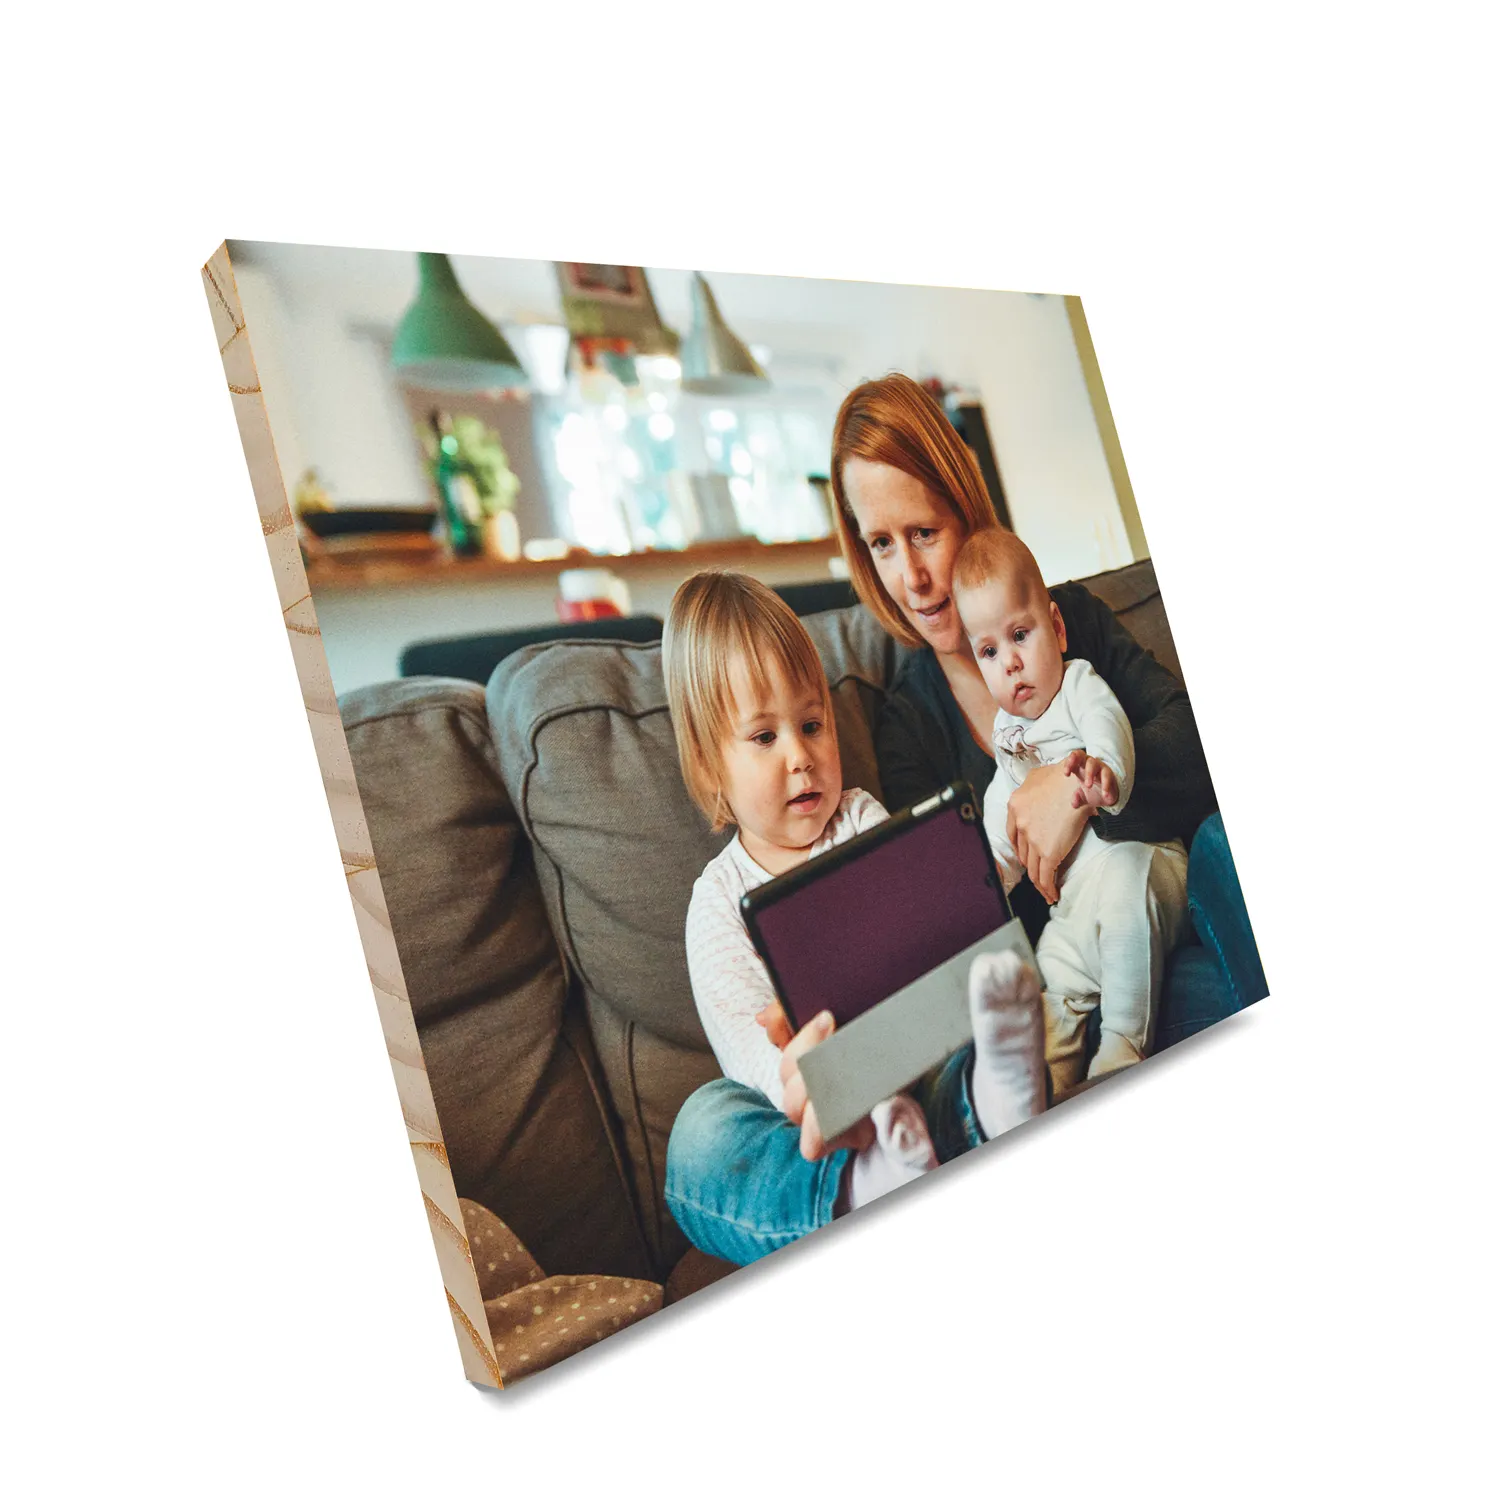 Bestseller Amazon Dekorative Mutter Geschenk Kiefer Foto rahmen Bester Preis Überlegene Qualität Tischplatte Sublimation Foto rahmen